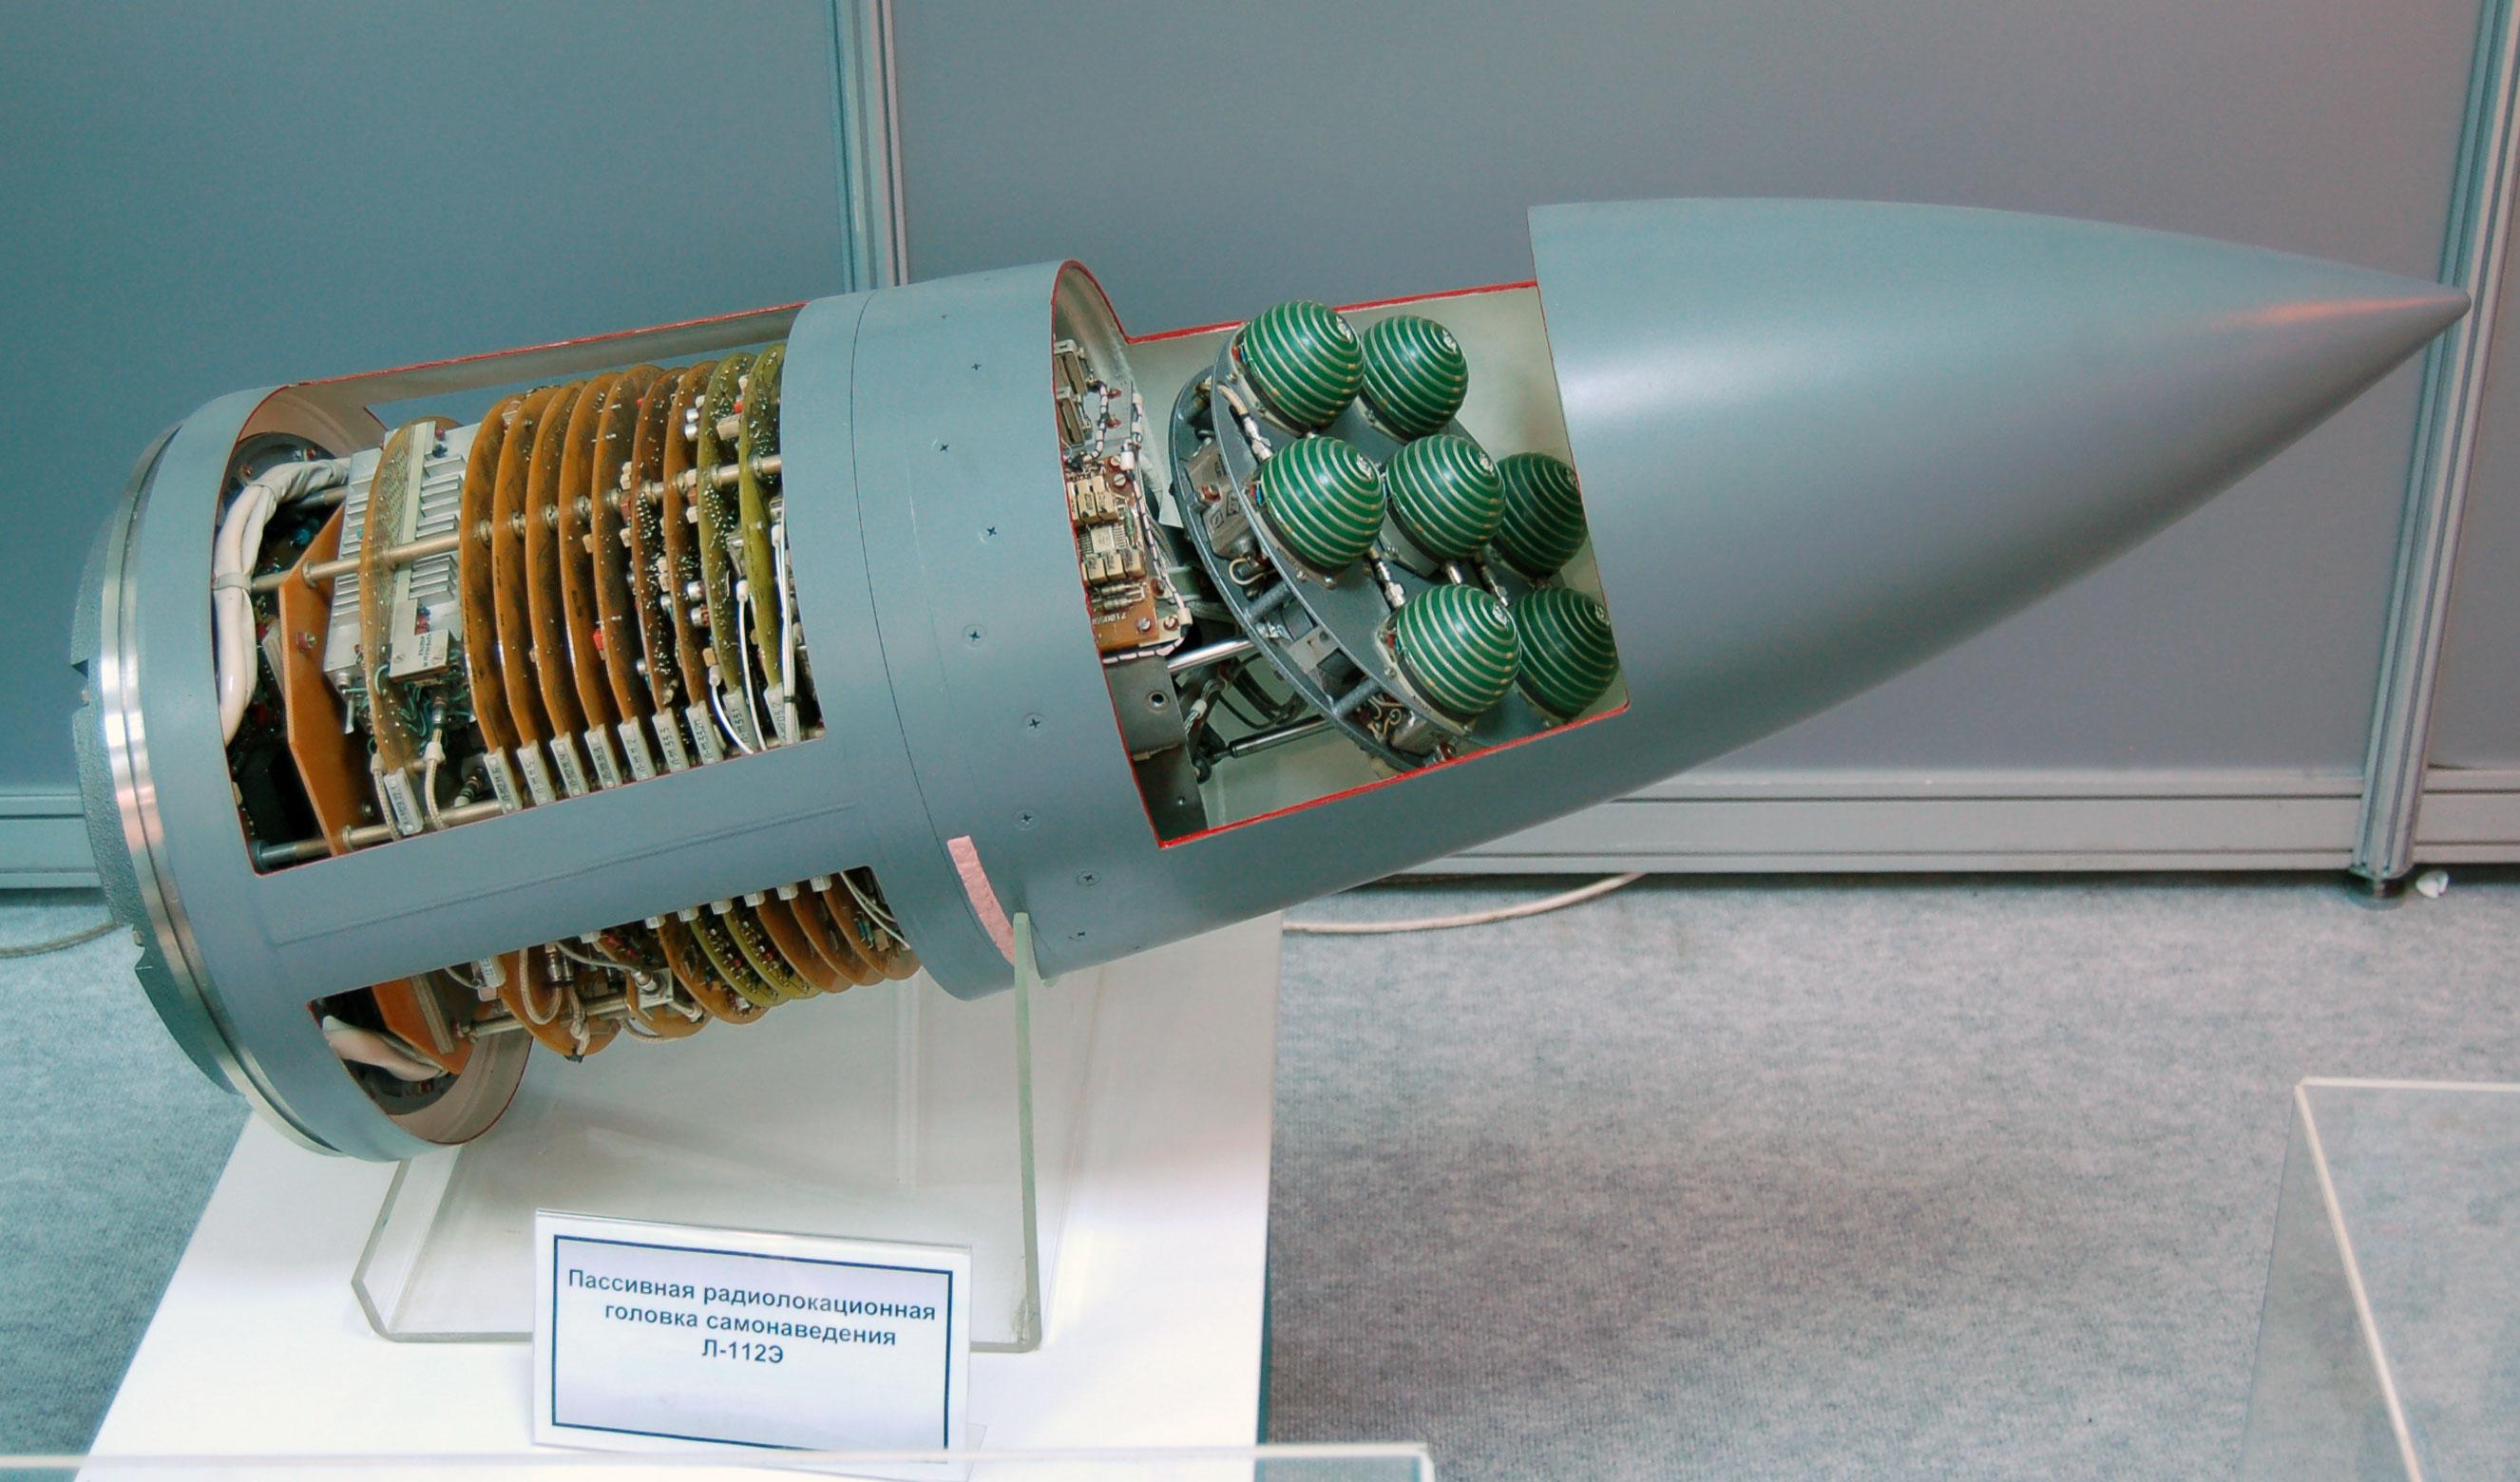 Rudal Jelajah Supersonik Kh-31 Rusia vs Sistem Tempur Aegis Amerika Serikat